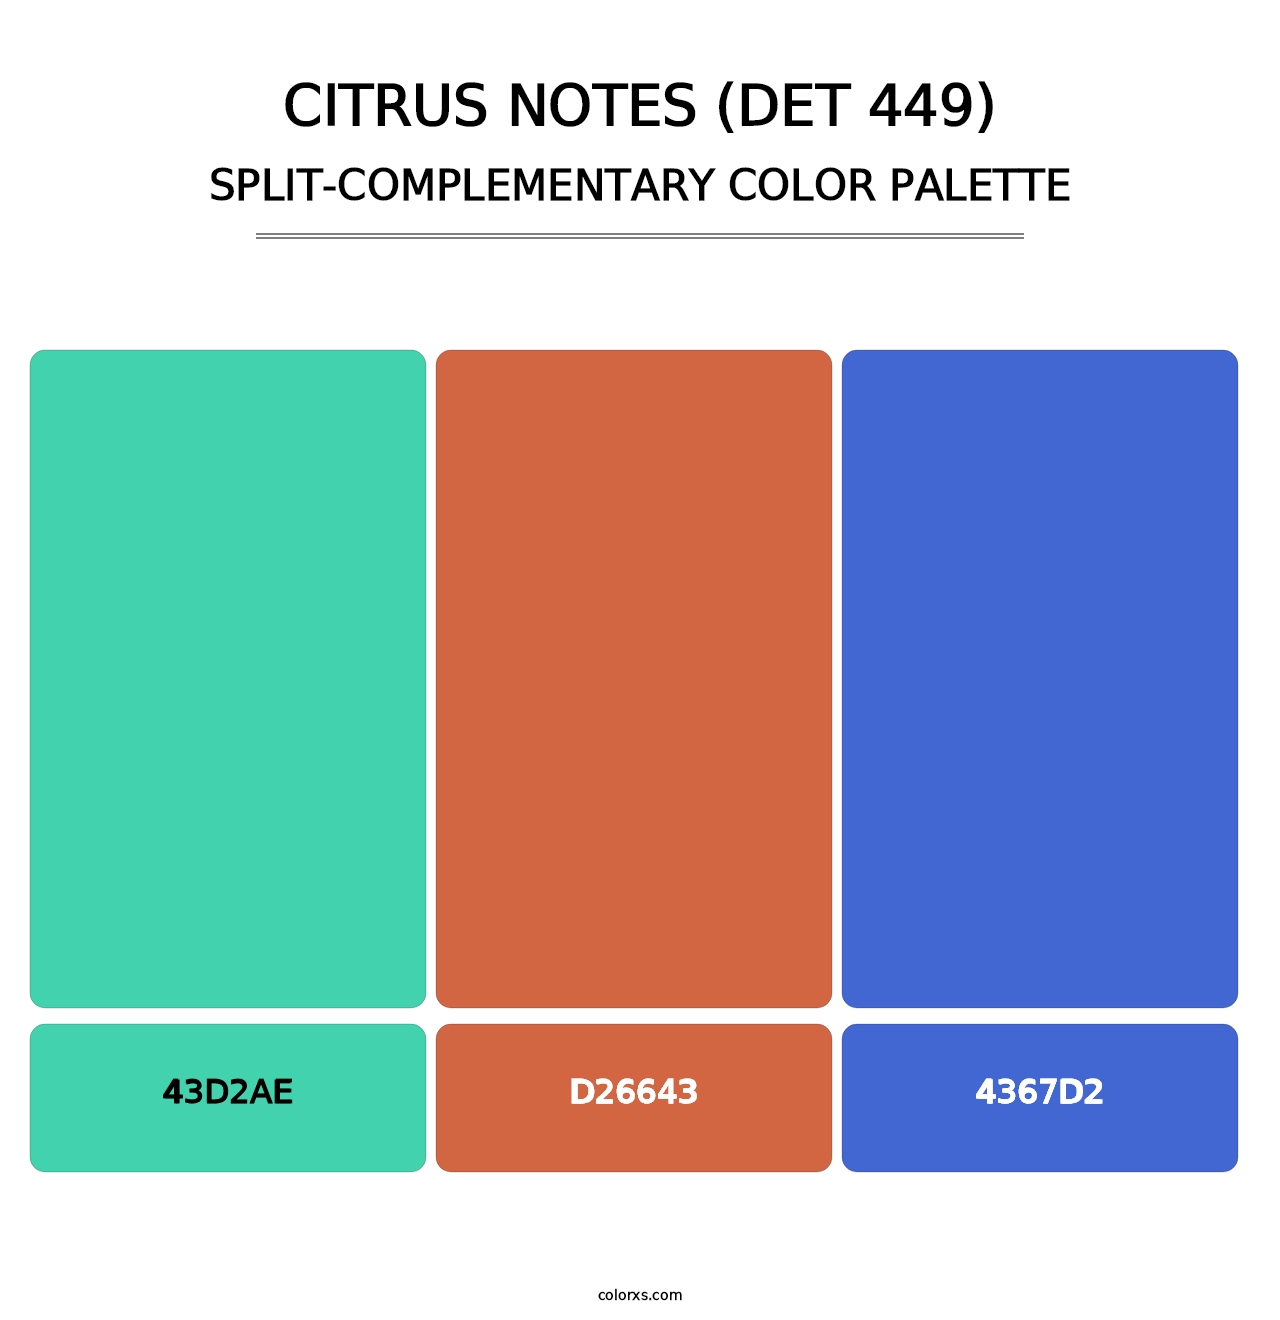 Citrus Notes (DET 449) - Split-Complementary Color Palette